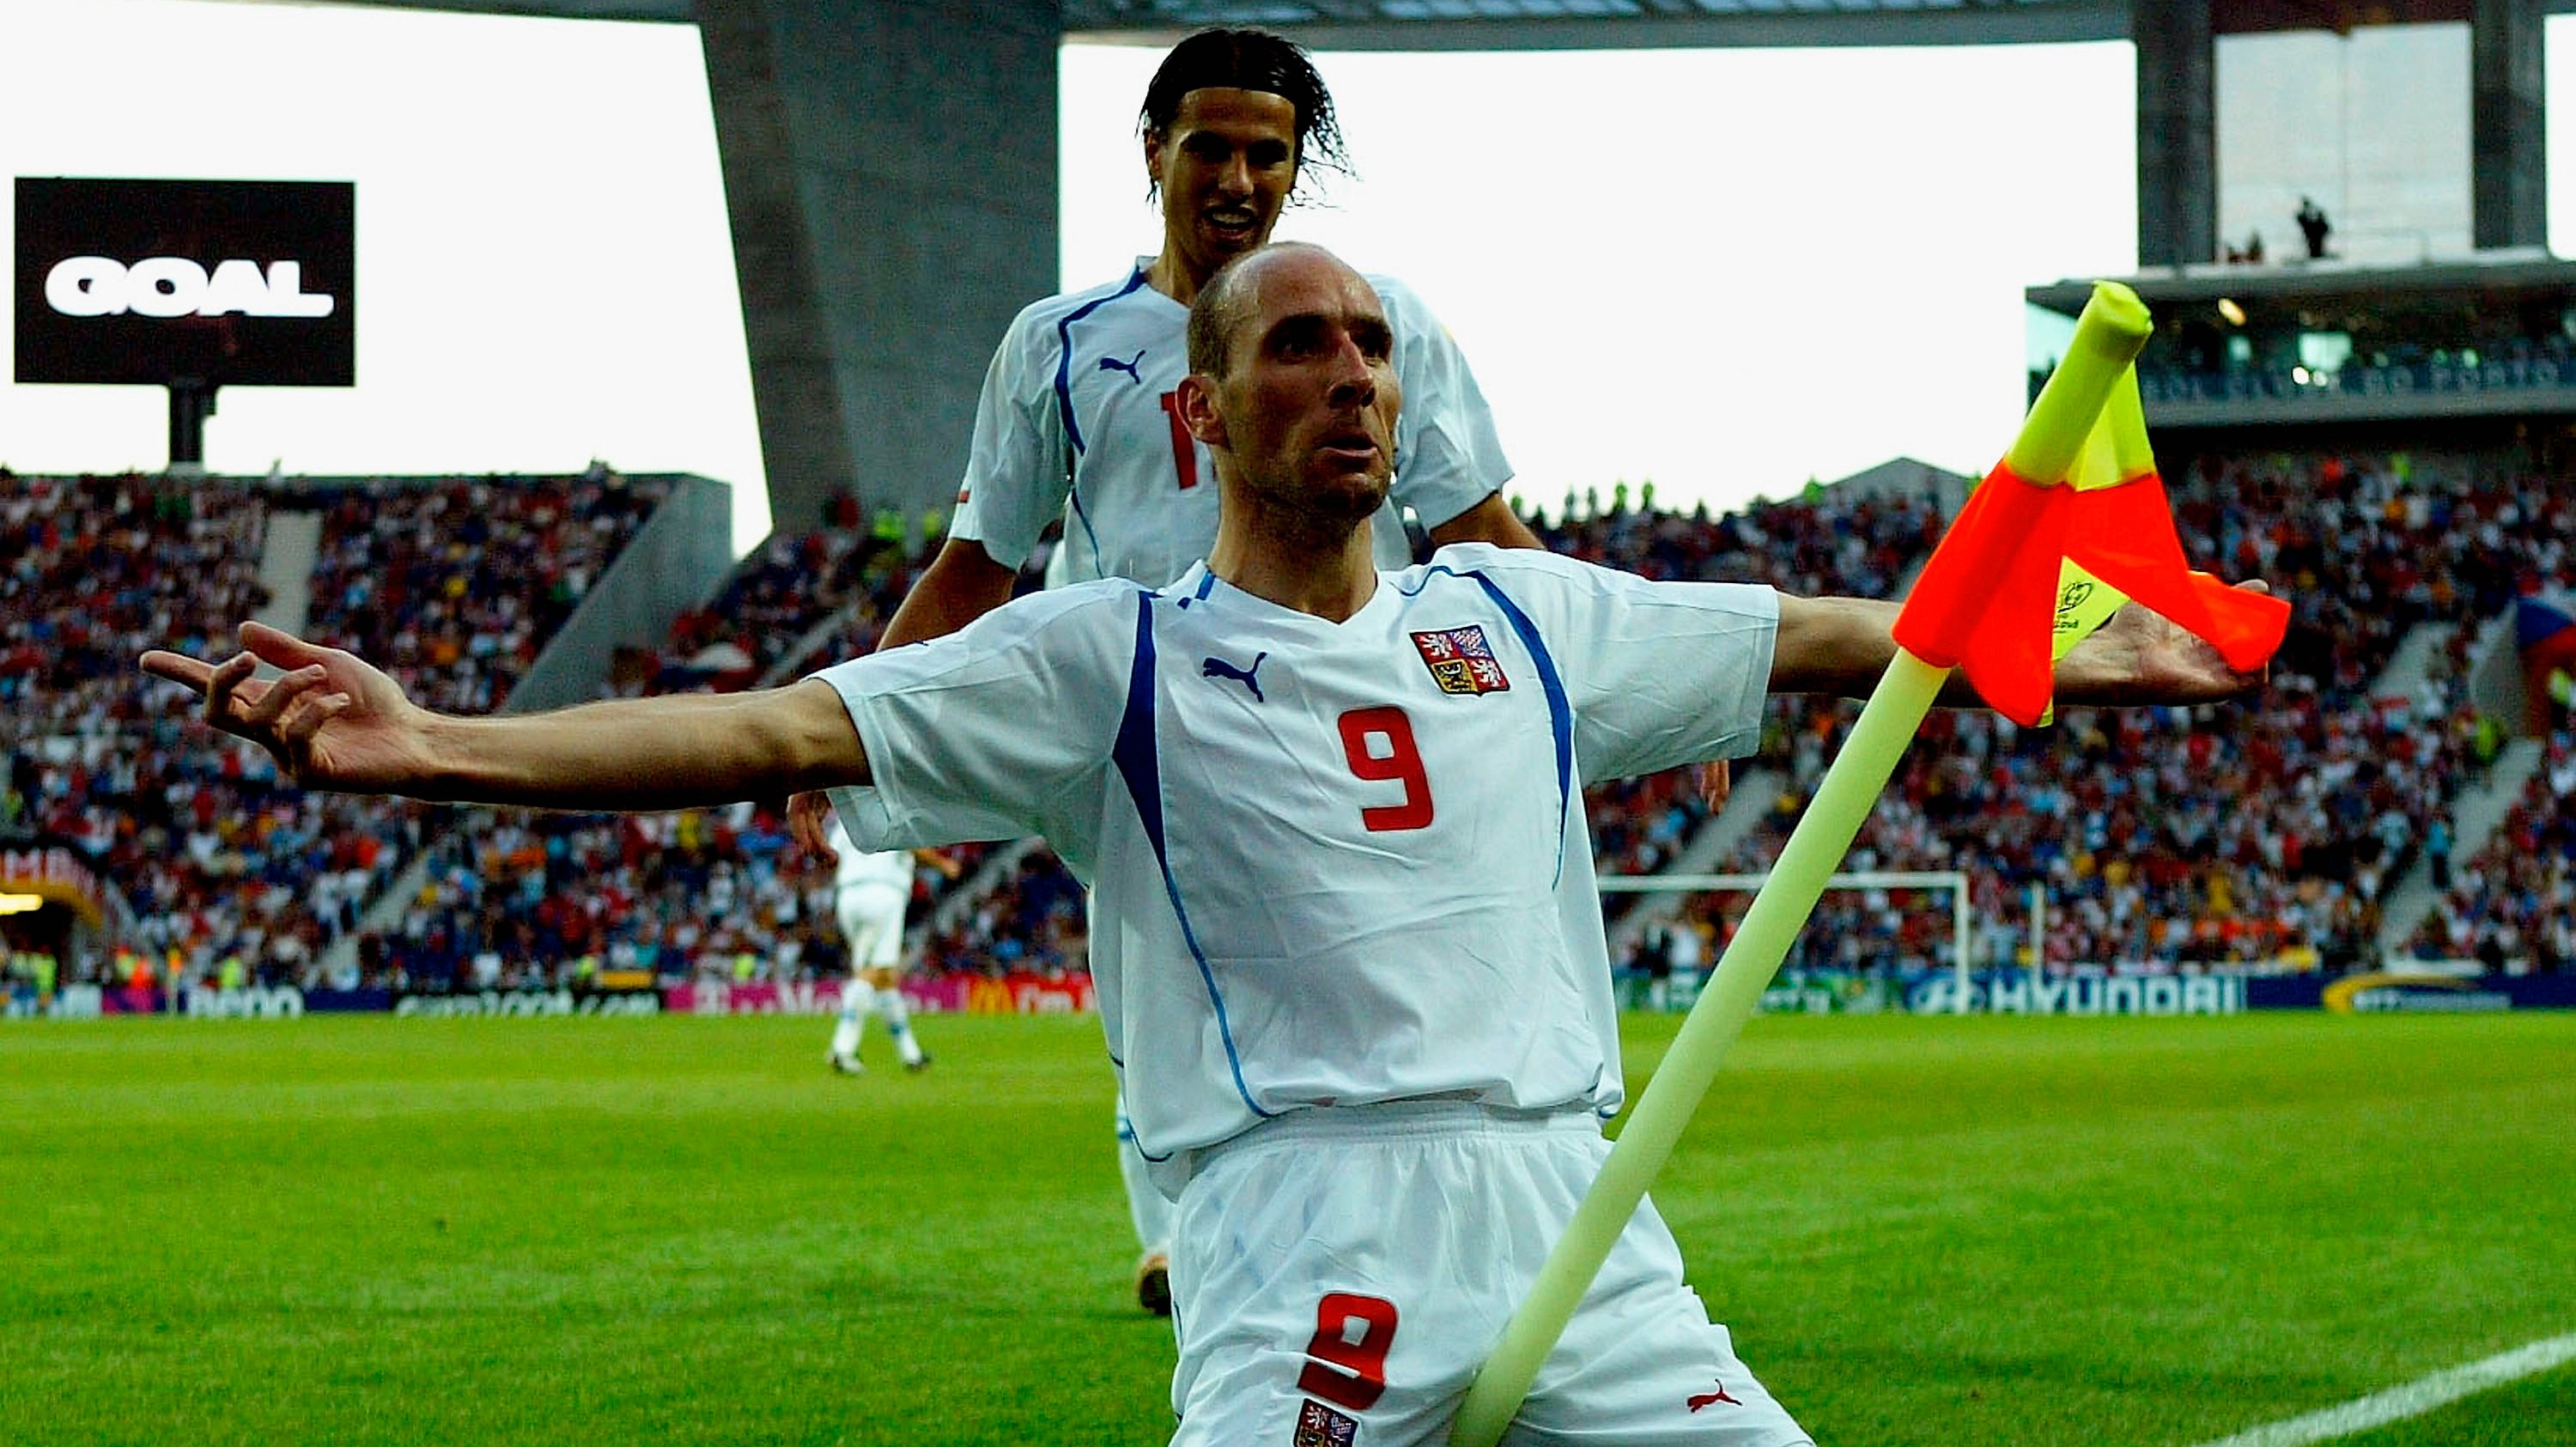 Jan Koller a festejar um dos golos da Rep. Checa, contra a Dinamarca, em 2004, no Estádio do Dragão